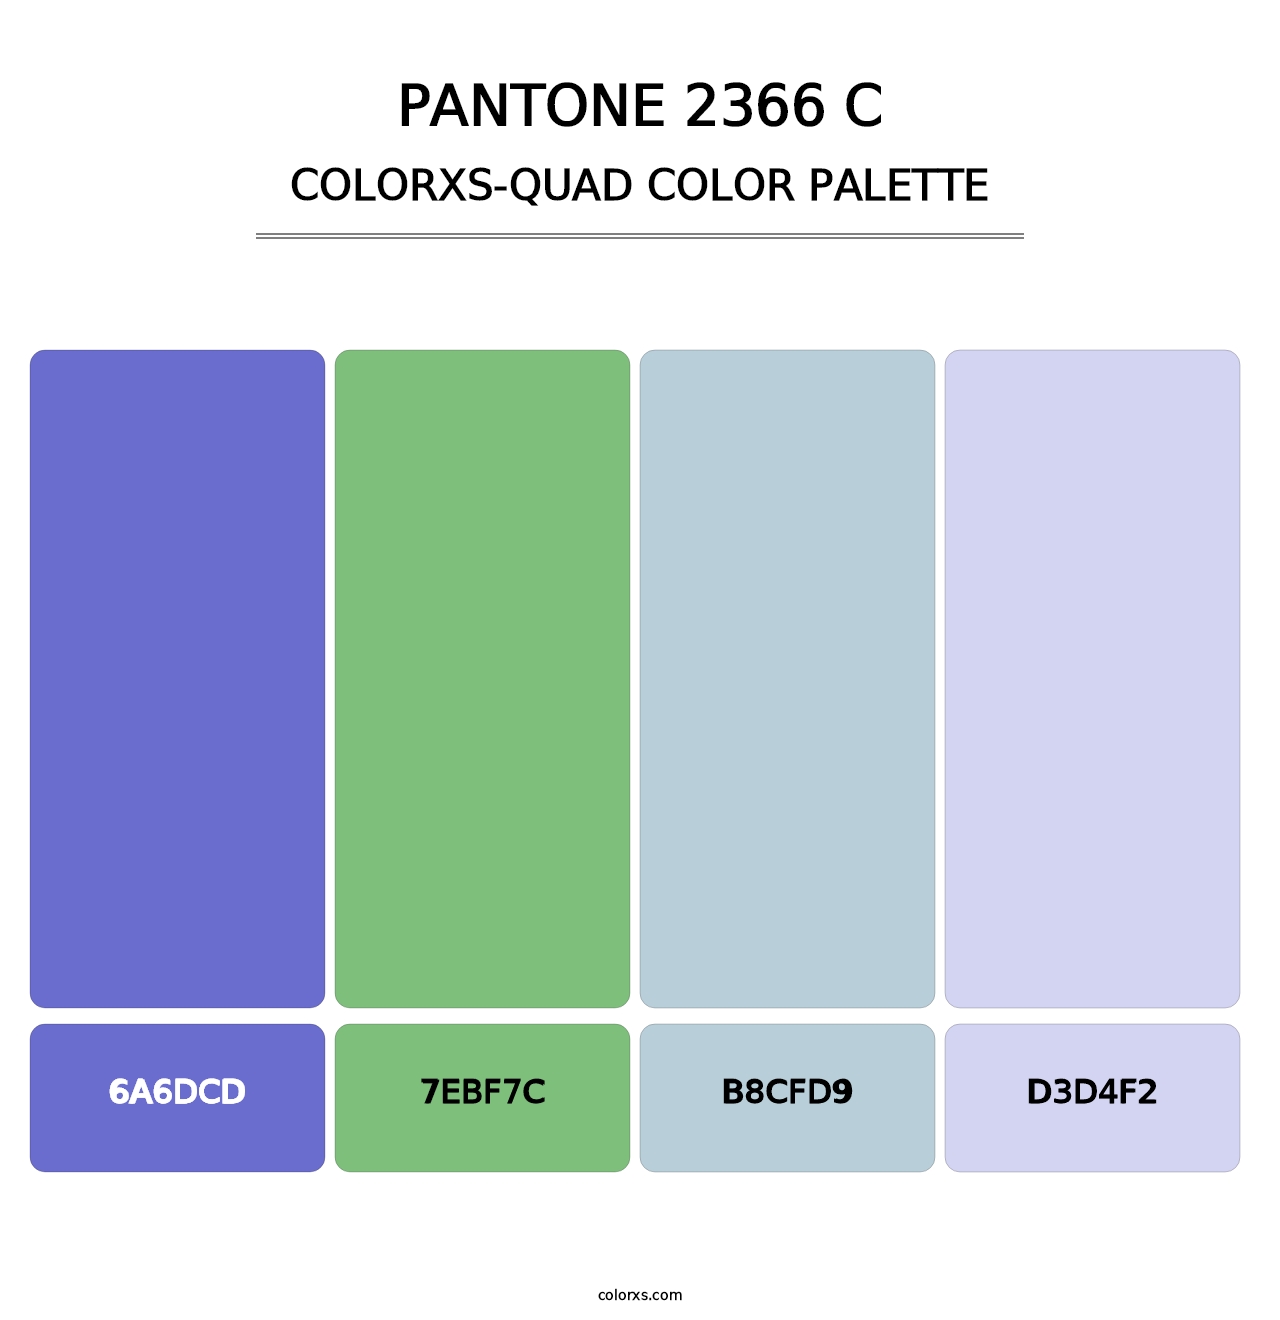 PANTONE 2366 C - Colorxs Quad Palette